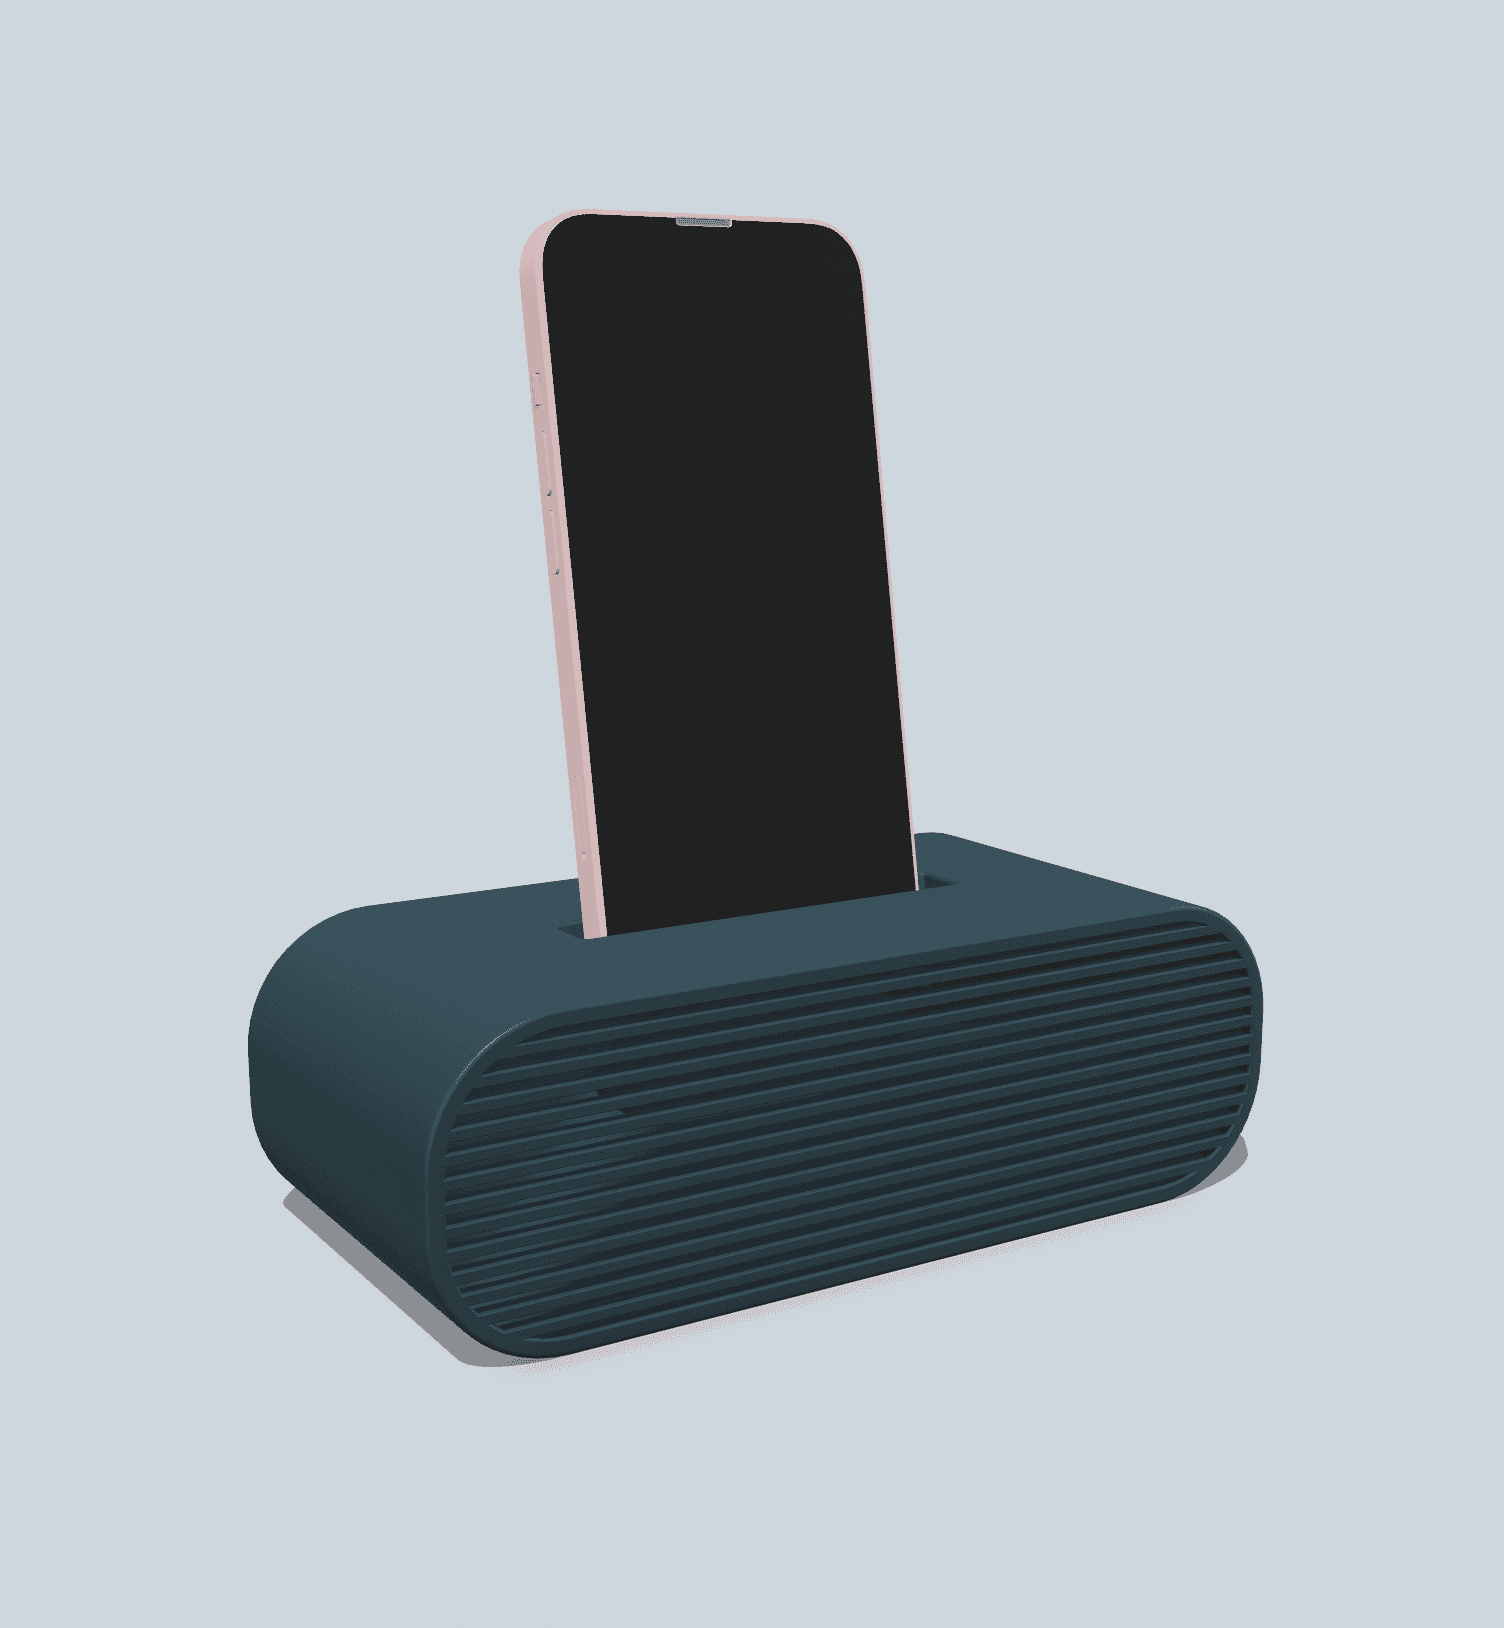 Phone speaker holder 3d model